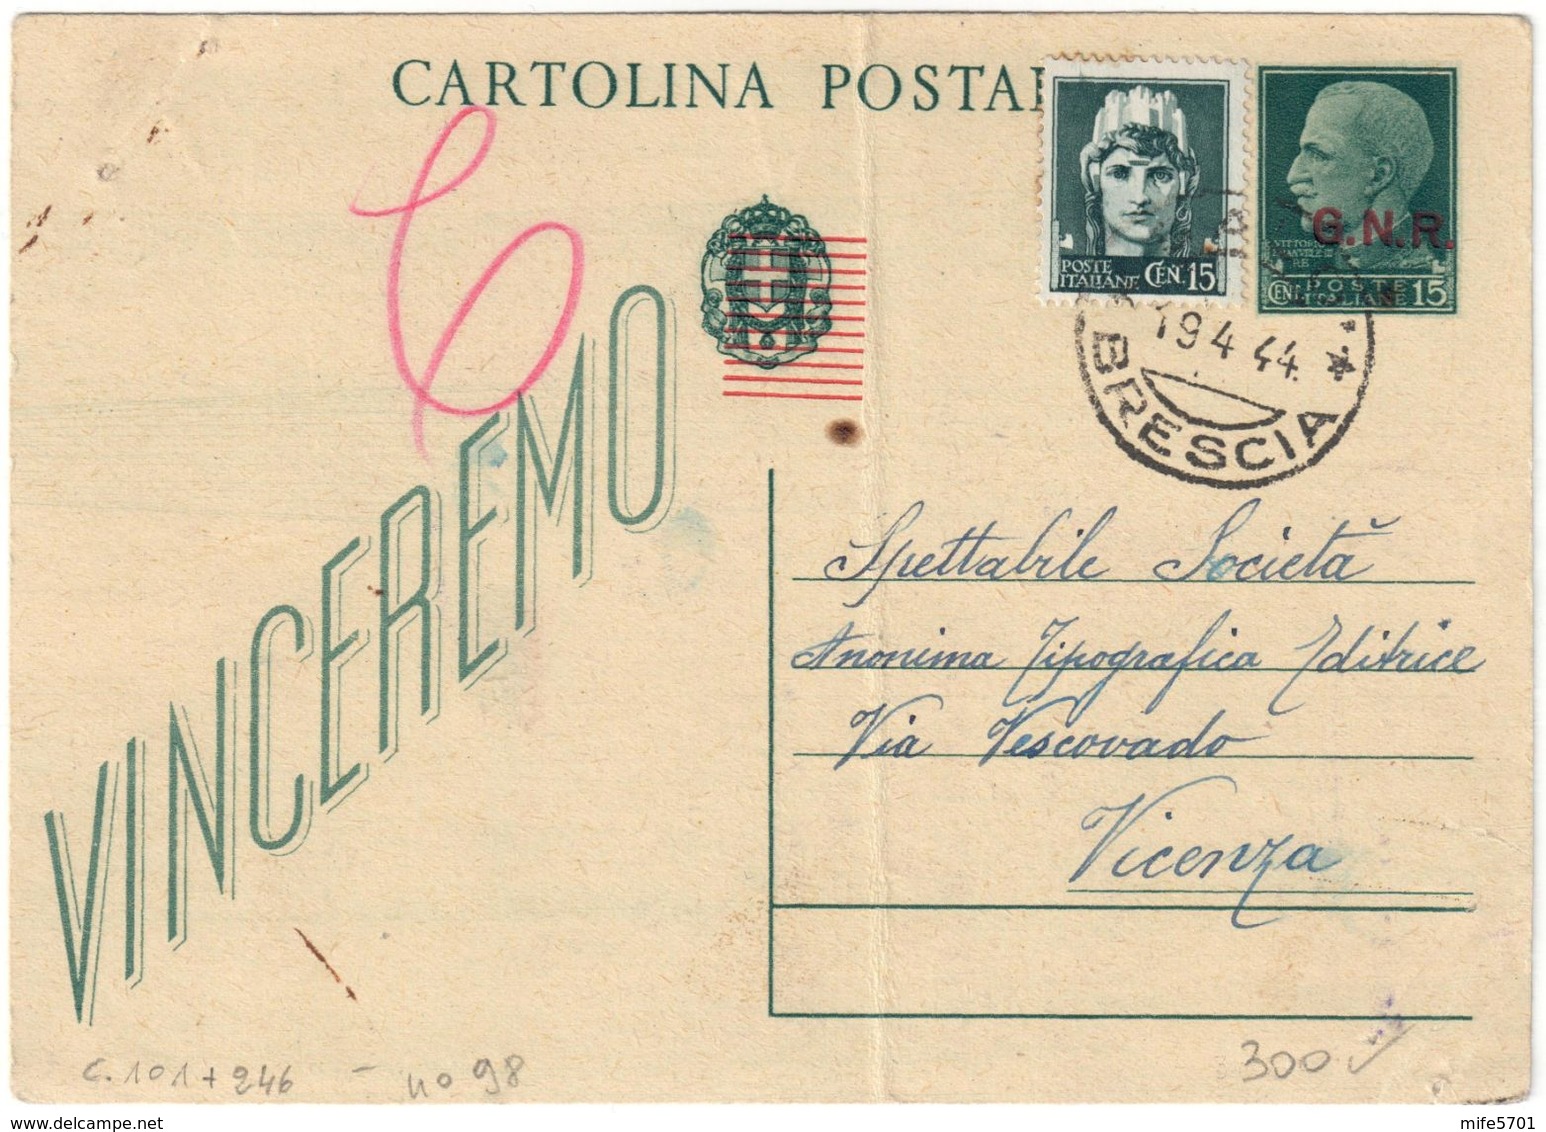 REPUBBLICA SOCIALE - INTERO POSTALE C. 15 SOPRASTAMPA G.N.R. + C. 15 IMPERIALE - SALO 19.4.1944 - FILAGRANO C101 - Interi Postali